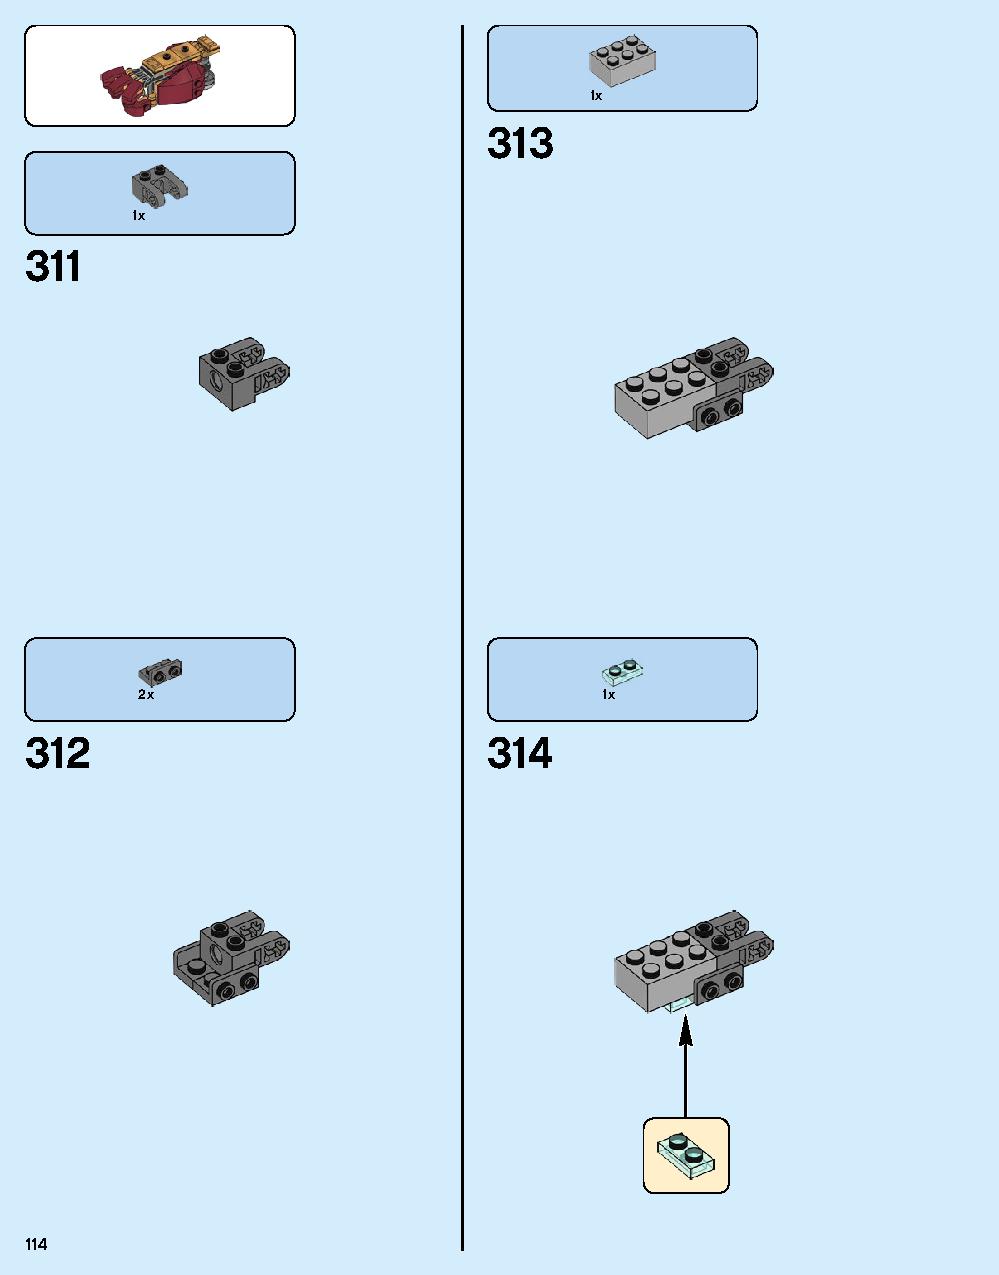 ハルクバスター：ウルトロン・エディション 76105 レゴの商品情報 レゴの説明書・組立方法 114 page